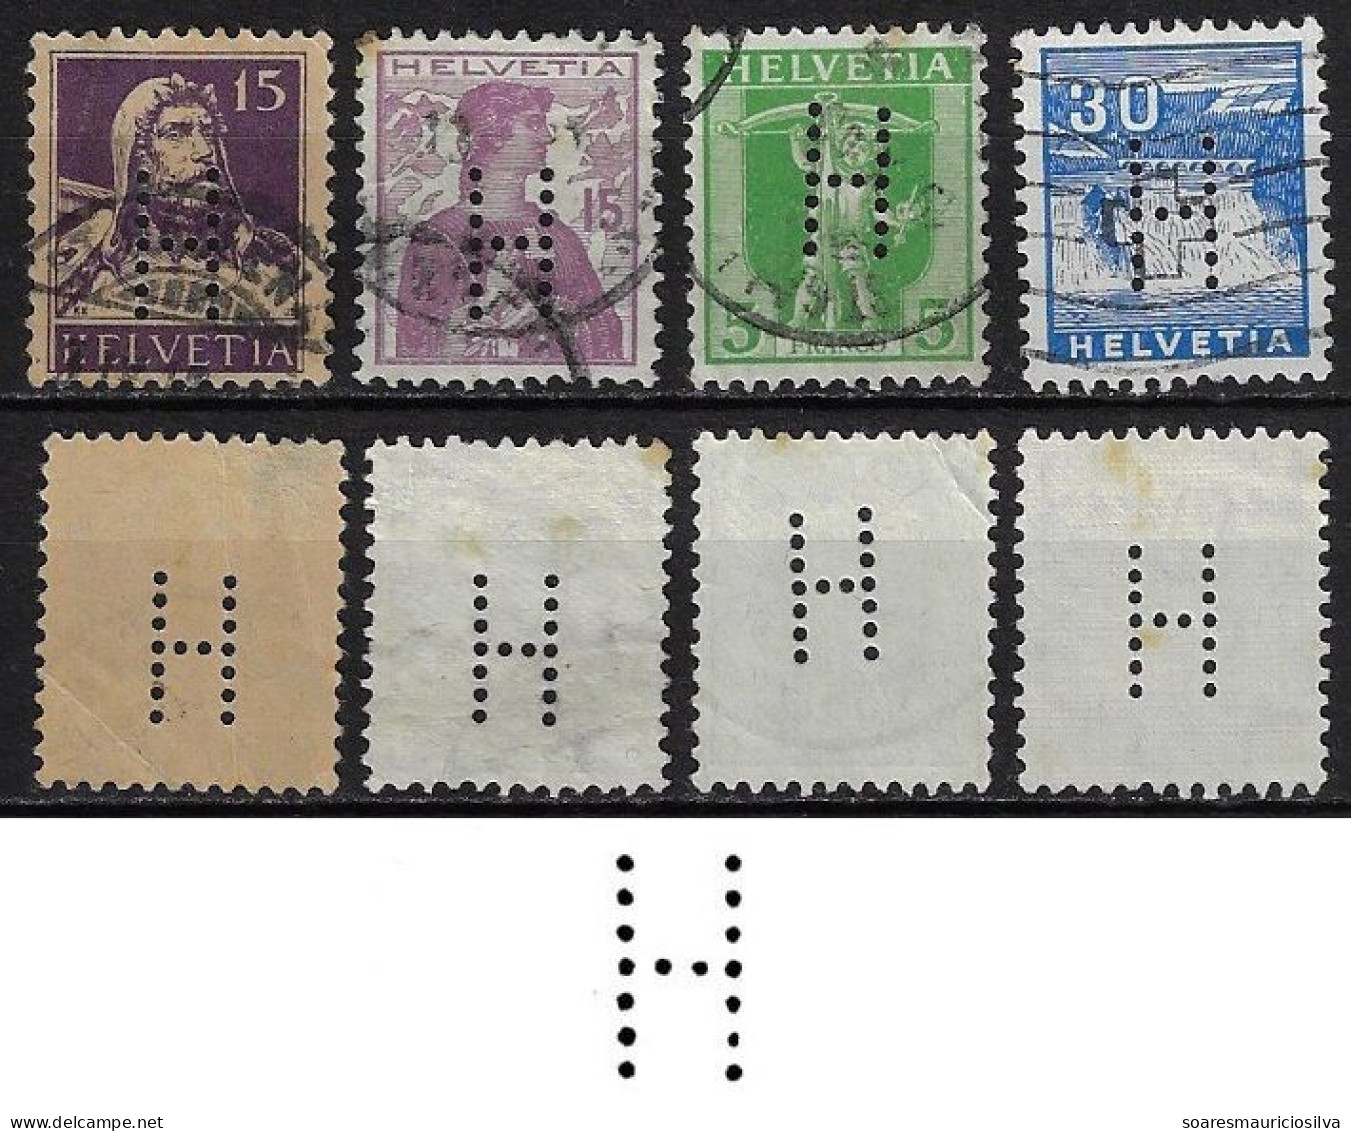 Switzerland 1901/1958 4 Stamp With Perfin H By Hausamann AG Plumbing Store In Zurich And St. Gallen Lochung Perfore - Gezähnt (perforiert)